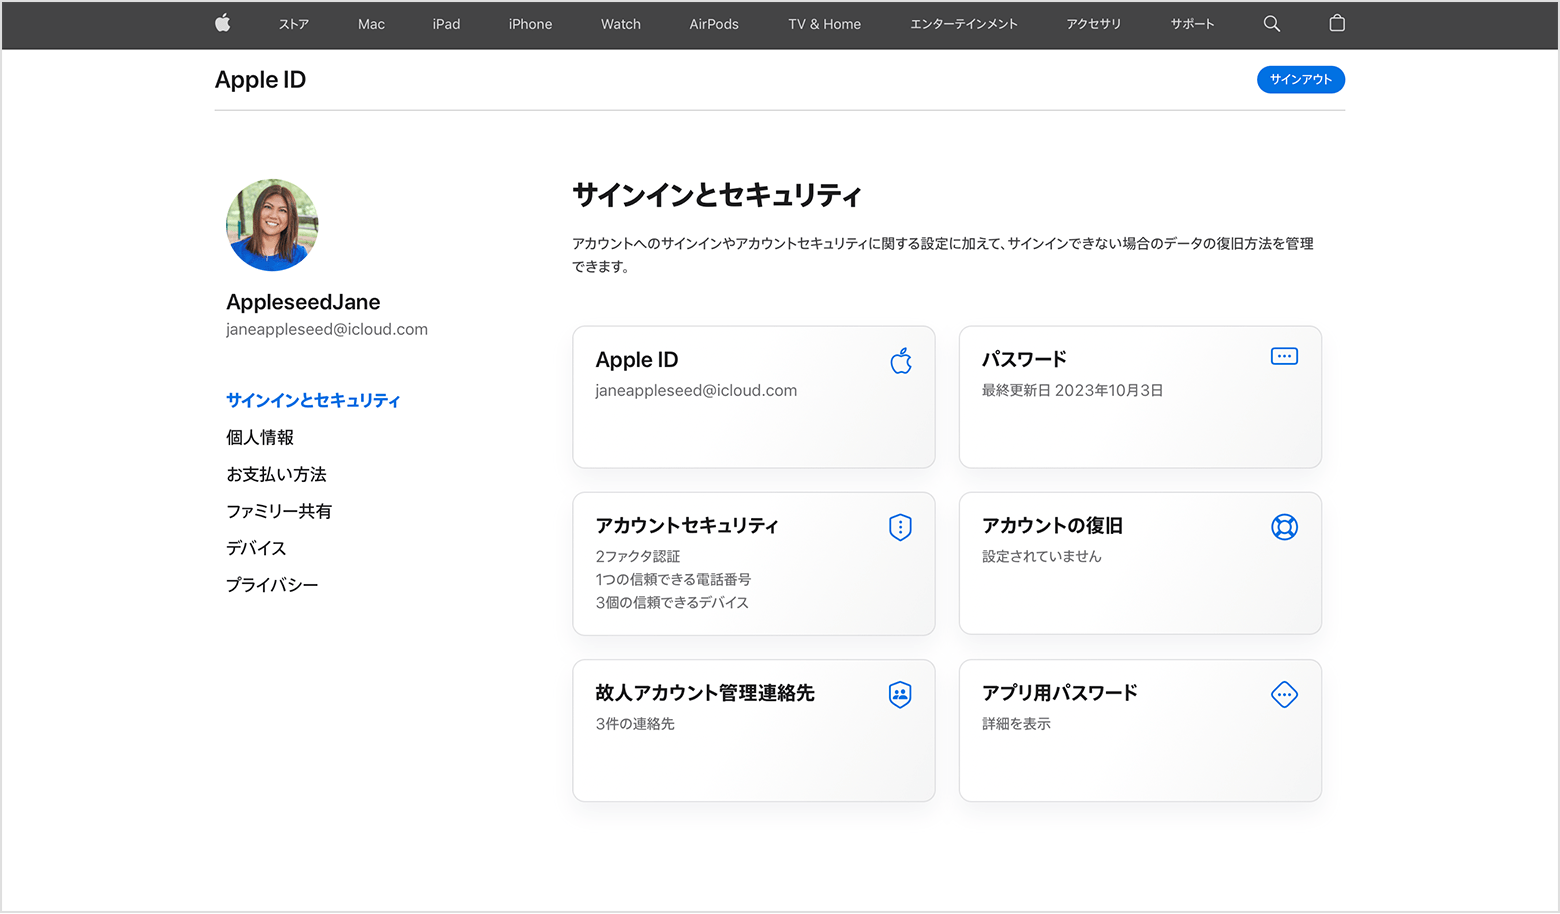 Web での Apple ID のパスワードの変更方法を示した画面